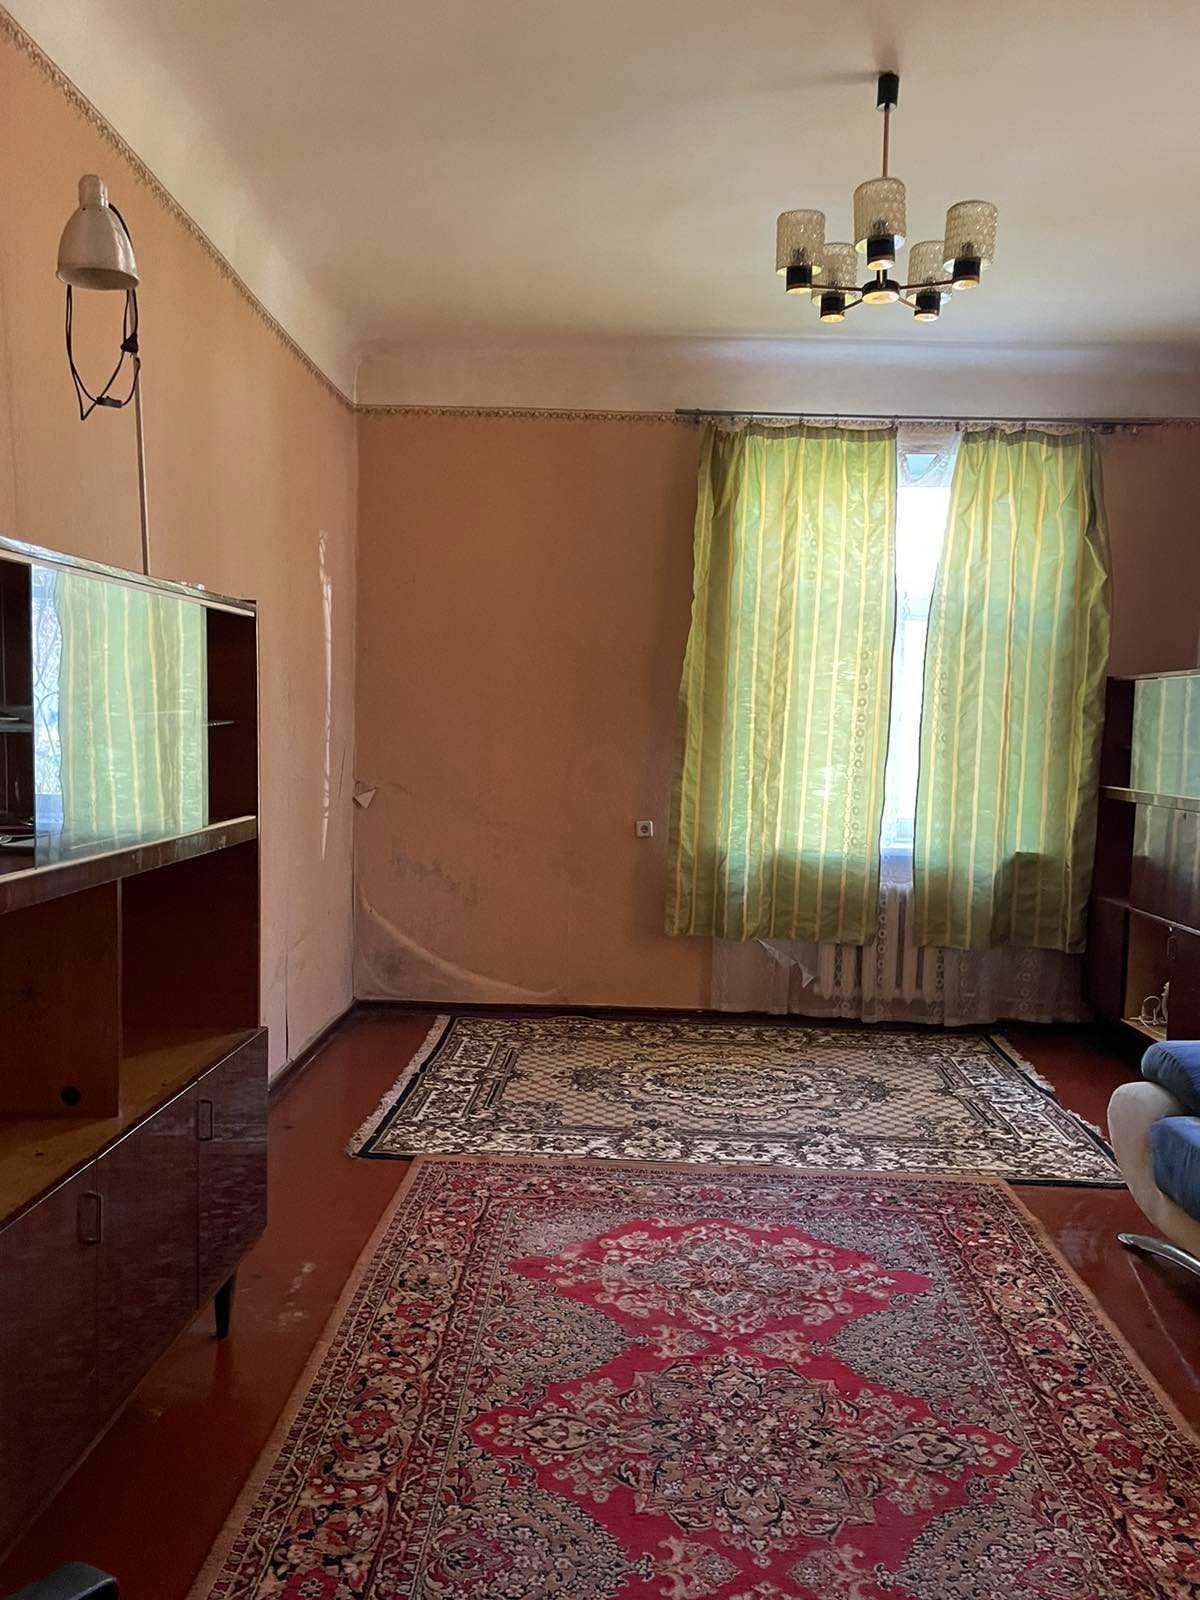 Продам 2 комнатную квартиру в начале пр.Слобожанский